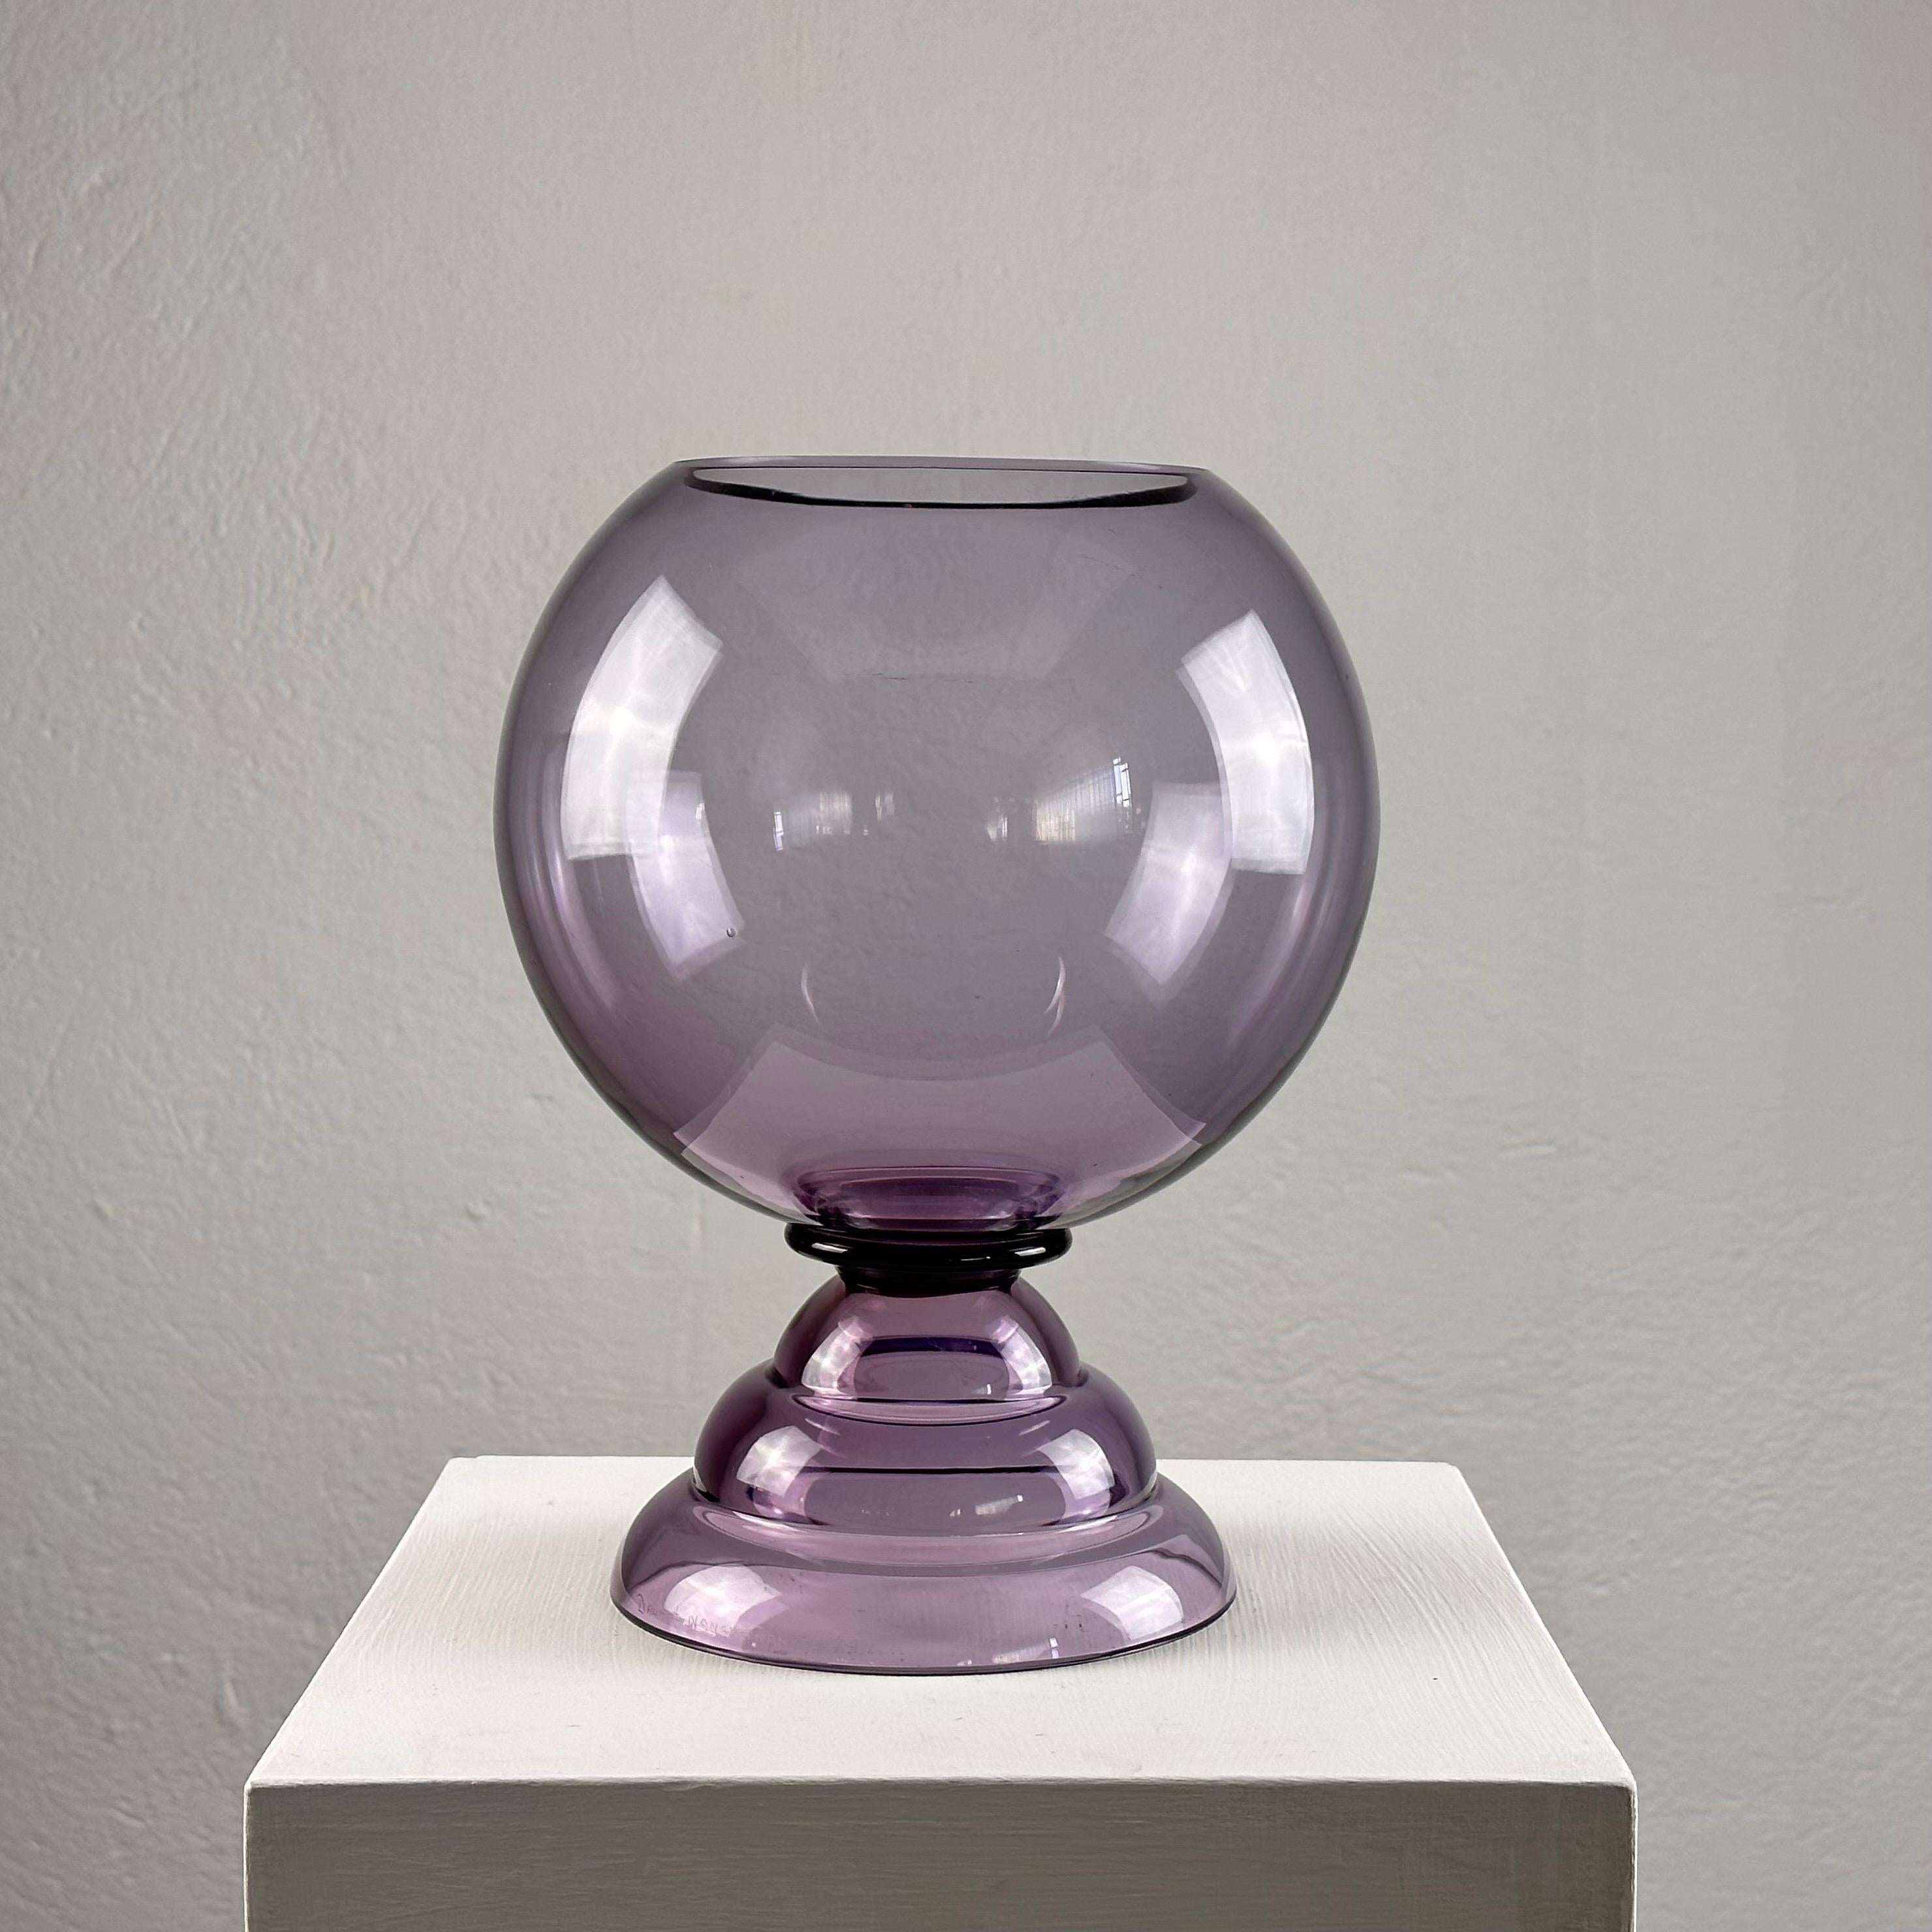 Ce grand vase dégage une élégance et une sophistication intemporelles, mettant en valeur l'héritage de Daum Nancy en matière de savoir-faire exceptionnel et de maîtrise artistique.

Le vase présente une couleur violette envoûtante qui ajoute une